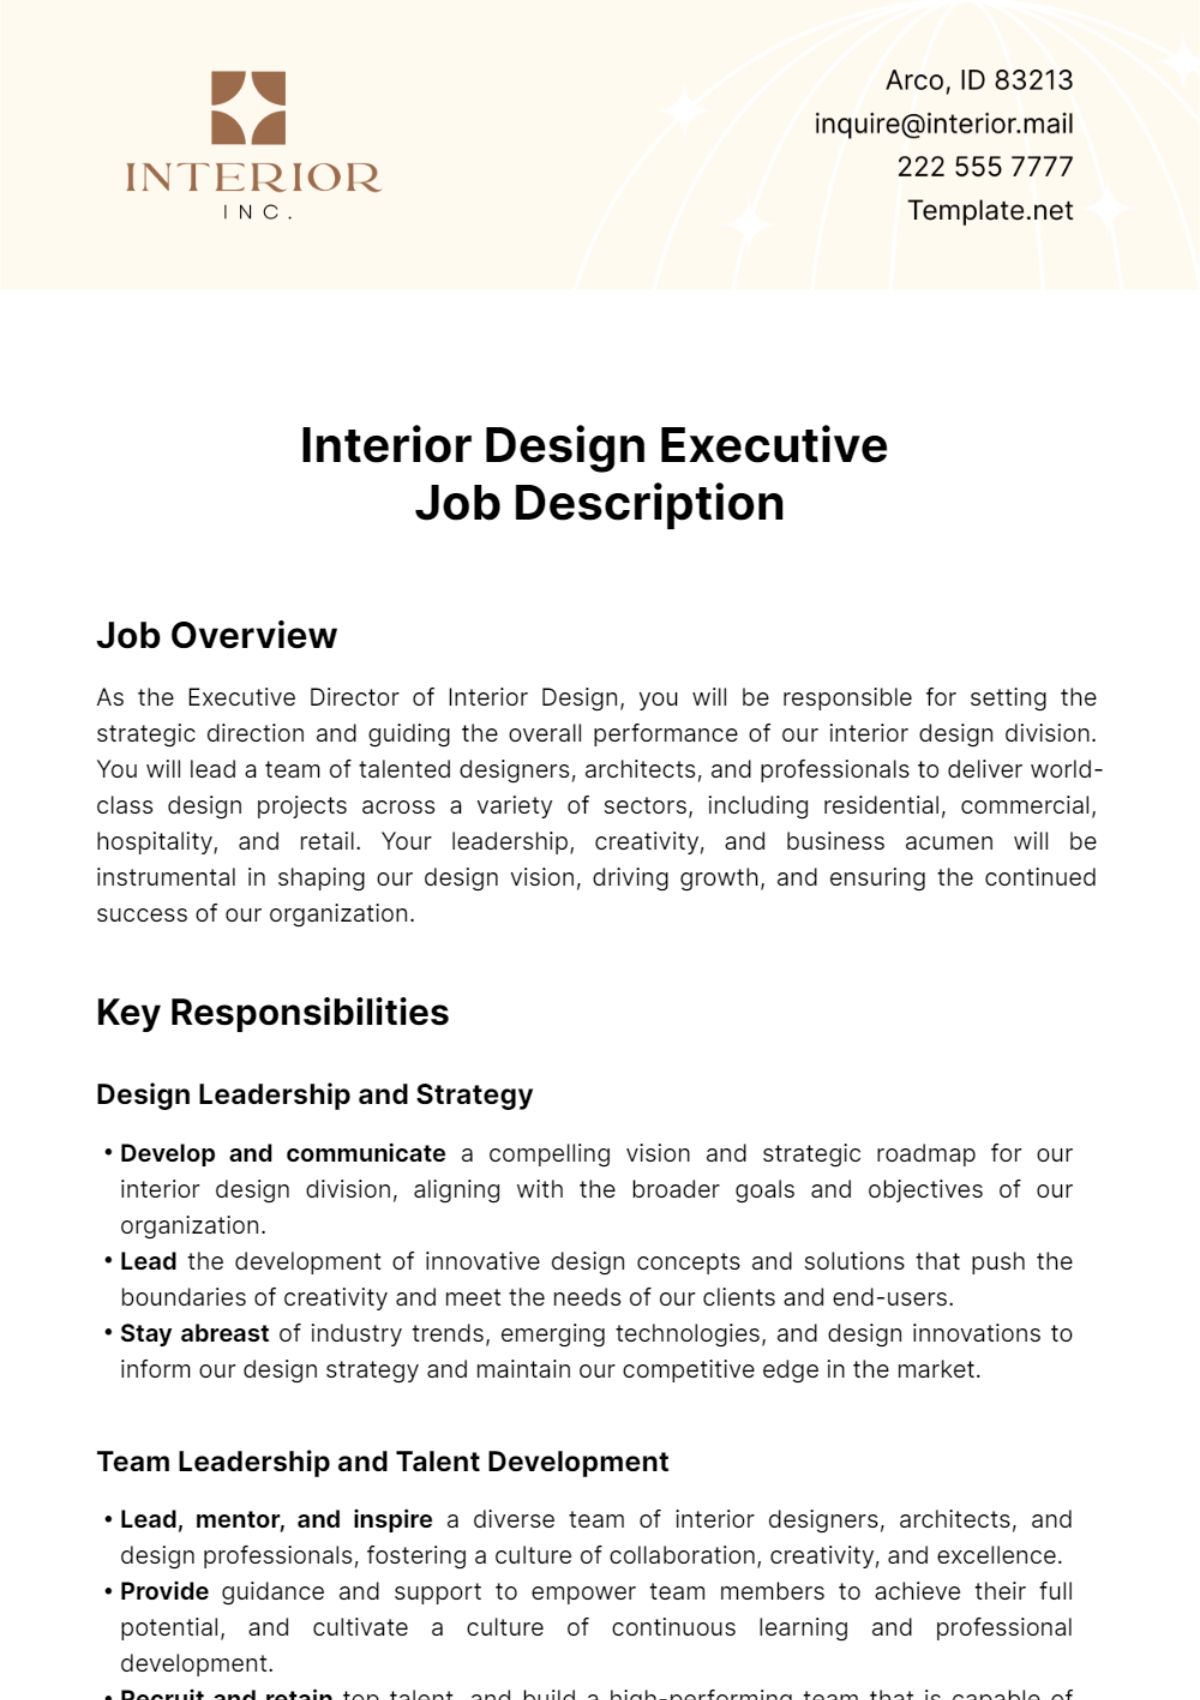 Interior Design Executive Job Description Template